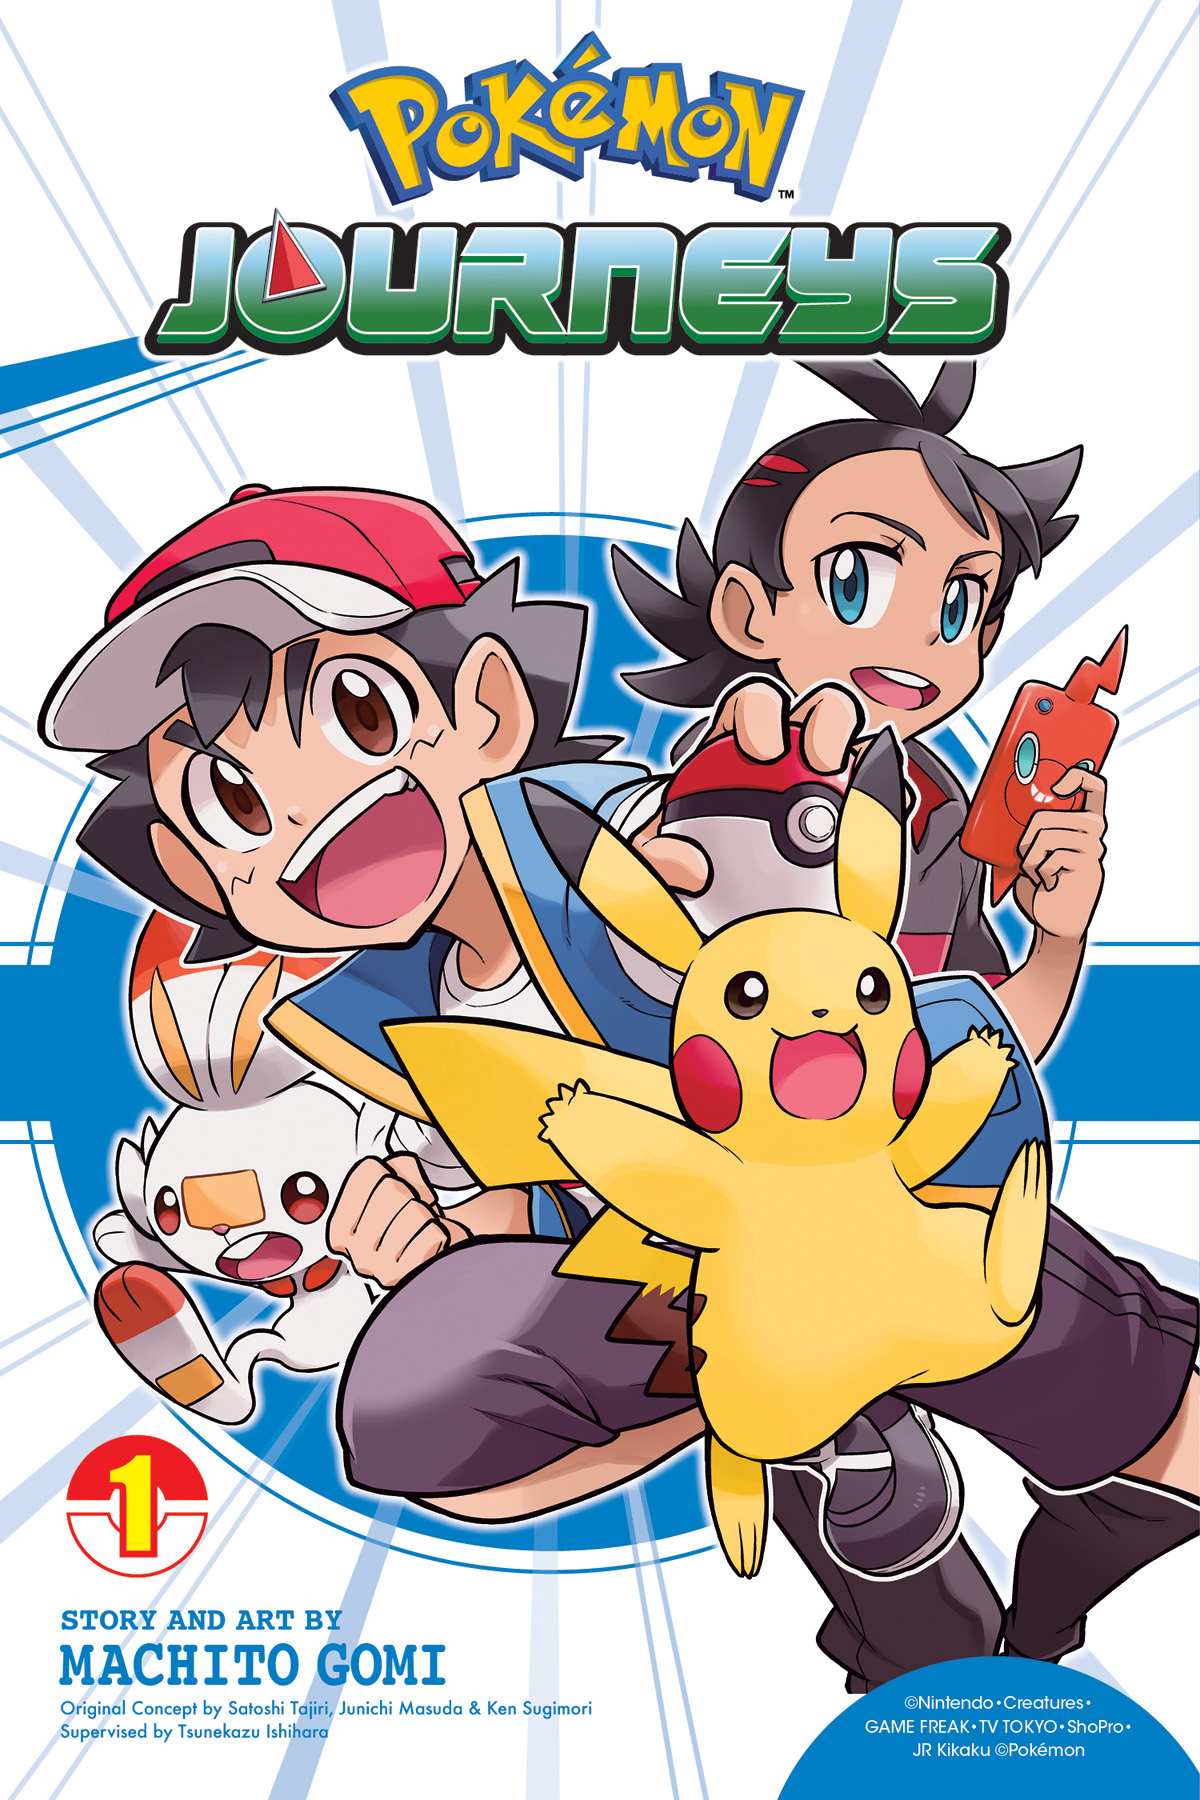 Pokemon viajes manga vol. 1 dato de las estrellas Goh y Scorbunny